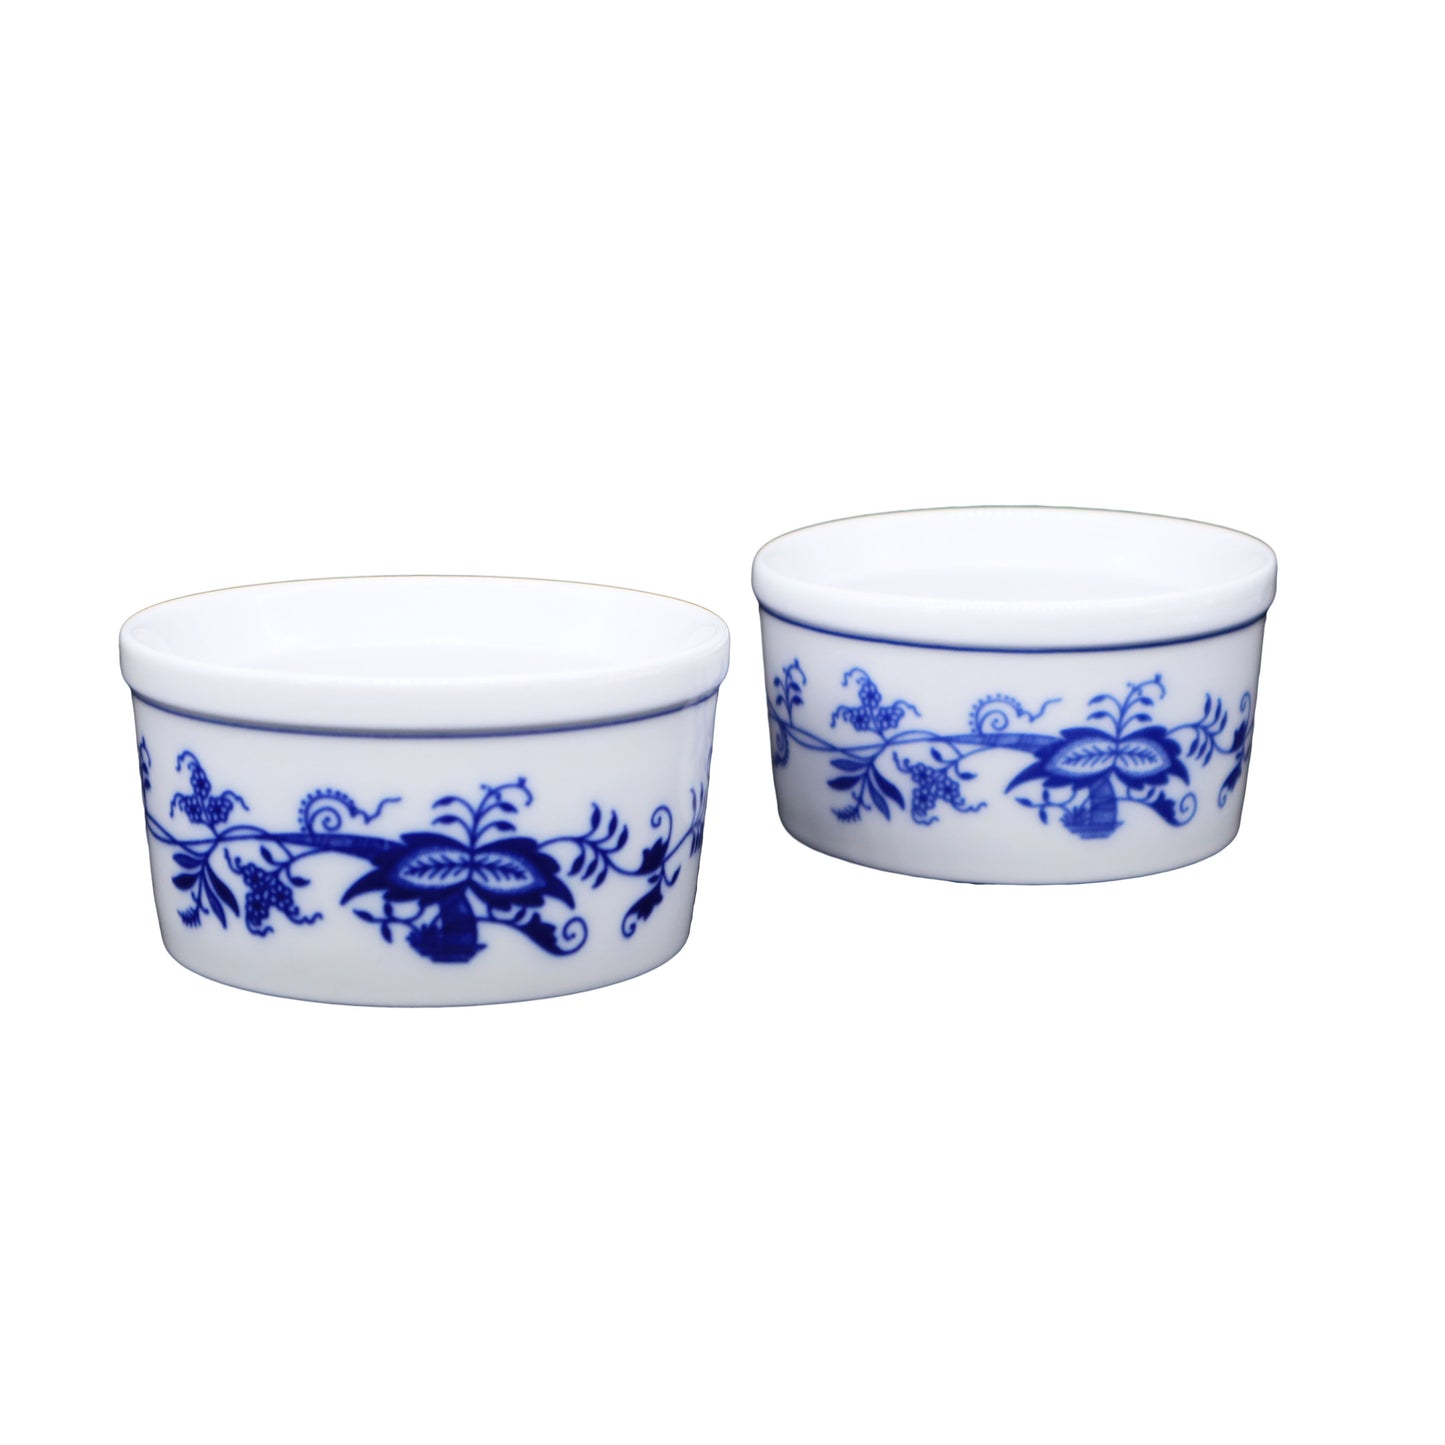 【ボヘミア陶器】 ブルーオニオントラディション ラメキン2個セット